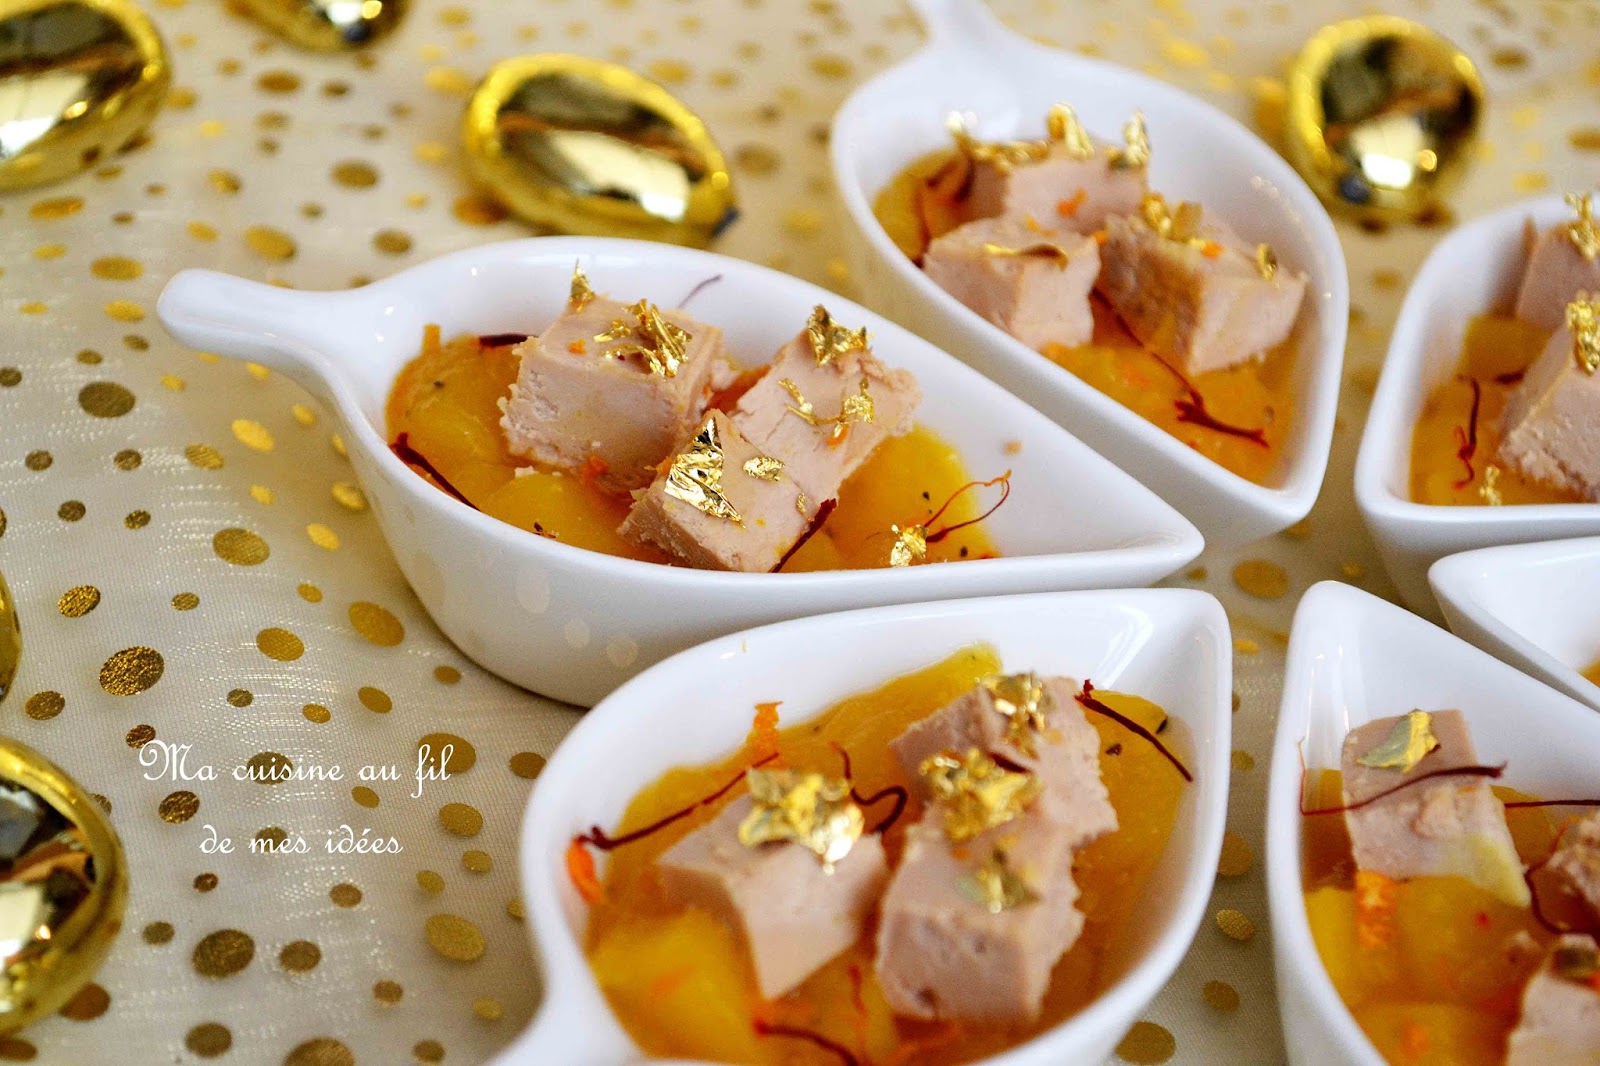 Ma cuisine au fil de mes idées: Foie gras et chutney de mangue